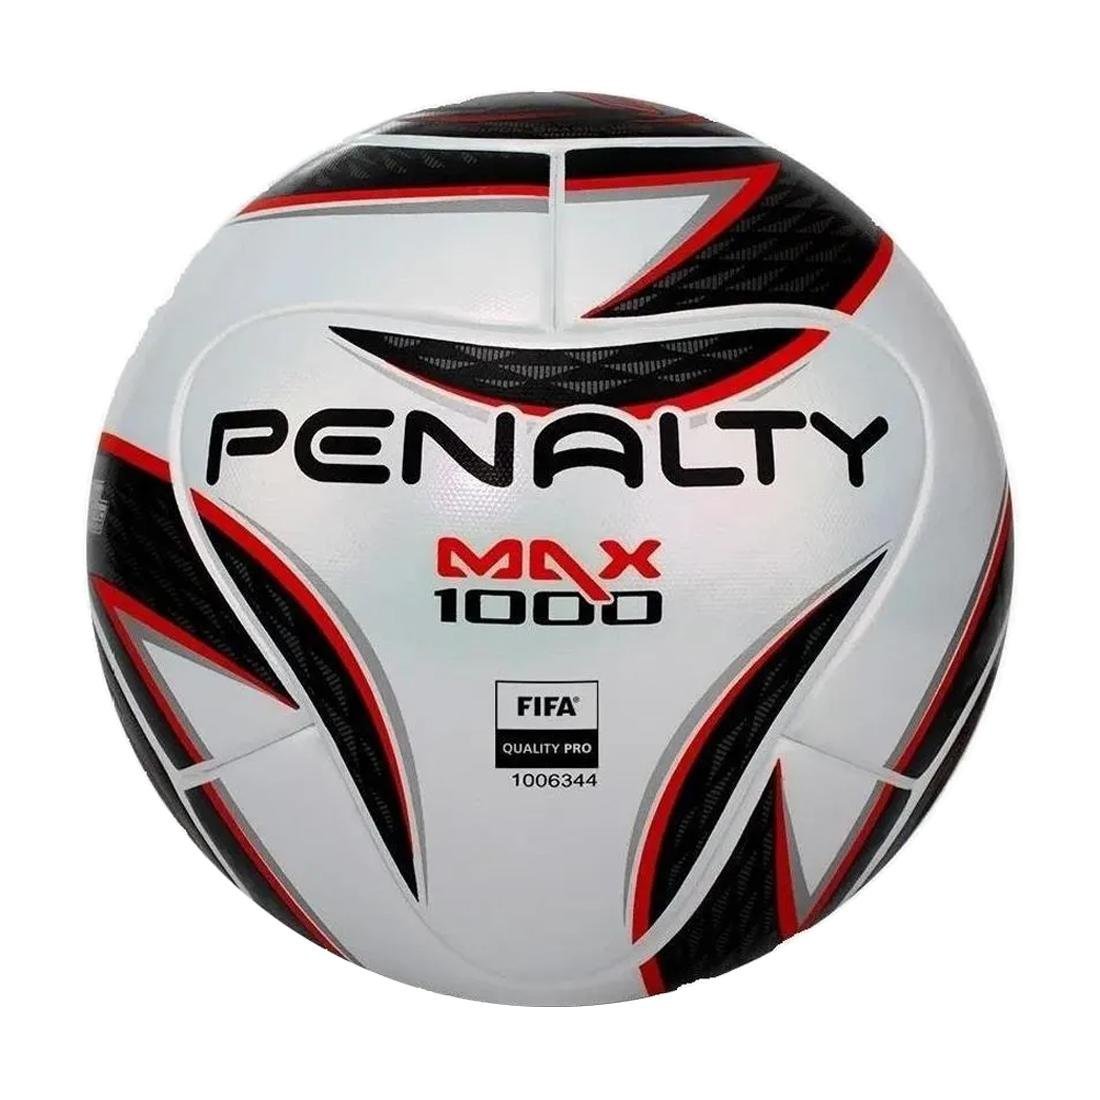 Bola Futsal Max 1000 XXII FIFA 2022 Penalty - Branco/Preto/Vermelho - 3